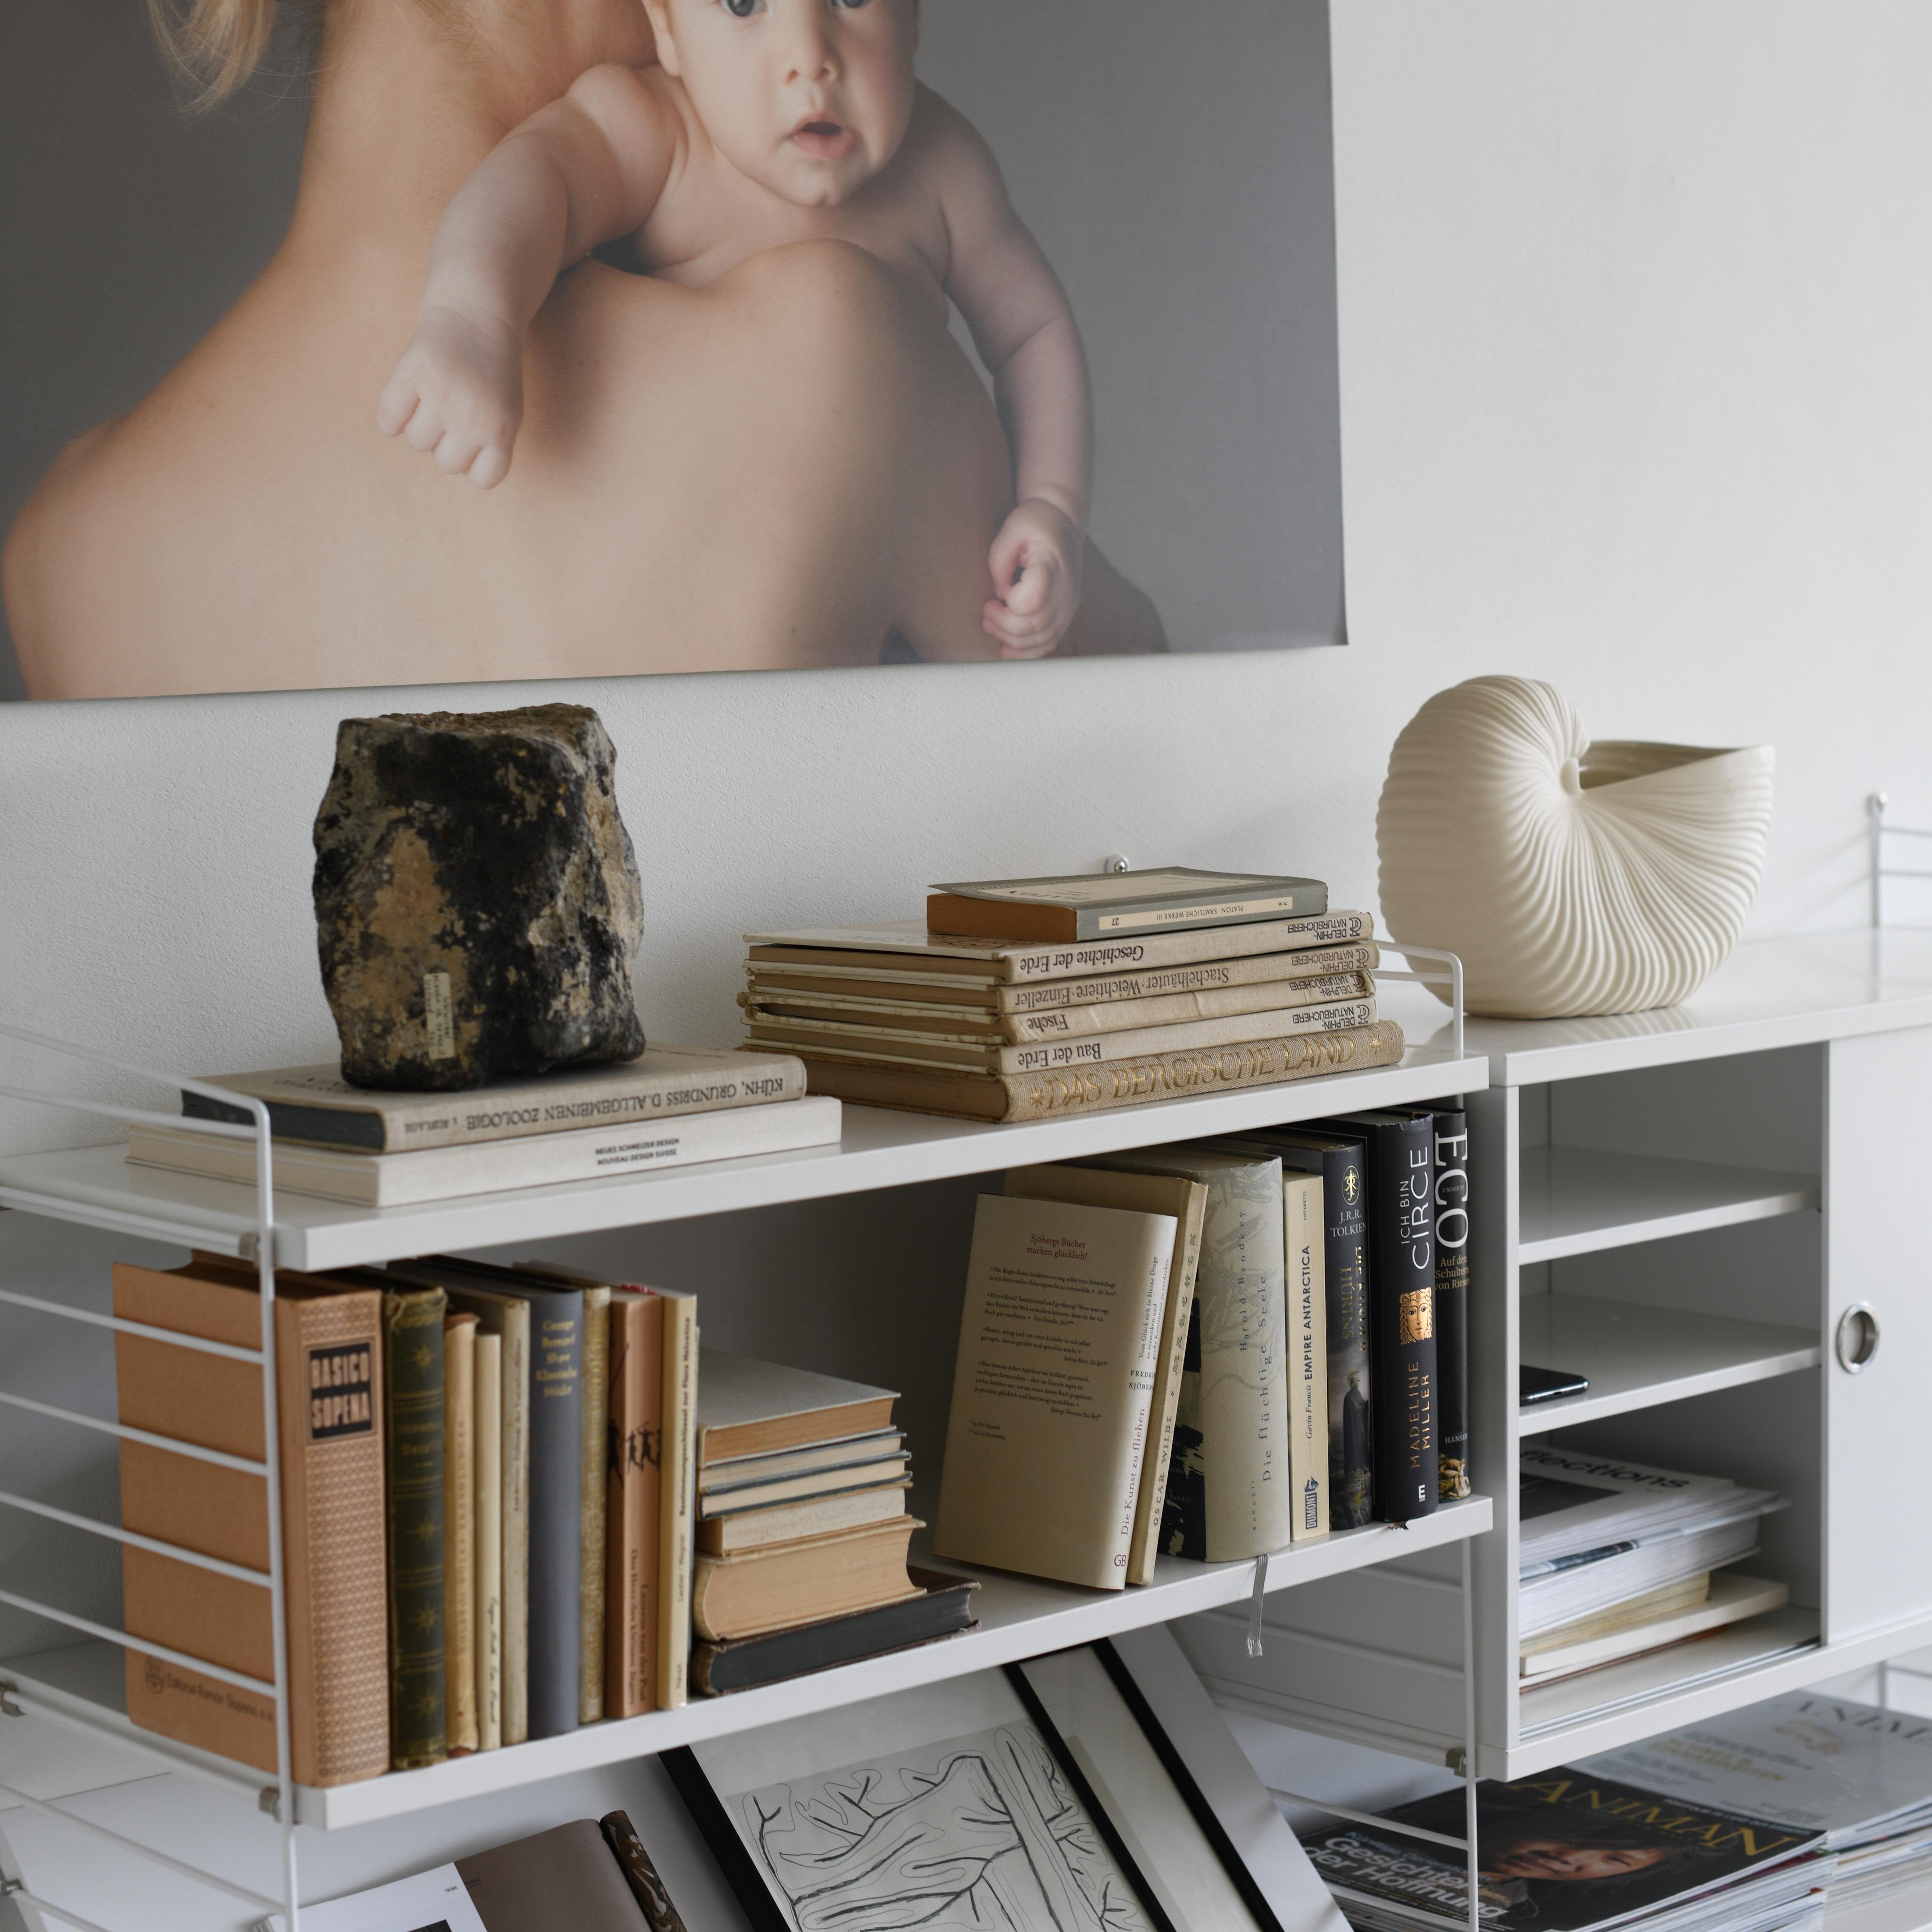 #homeinspo #homedecor #cozyhome #zuhause #bookshelf #bücherregal #stringfurniture #livingroom #livingroominspo 